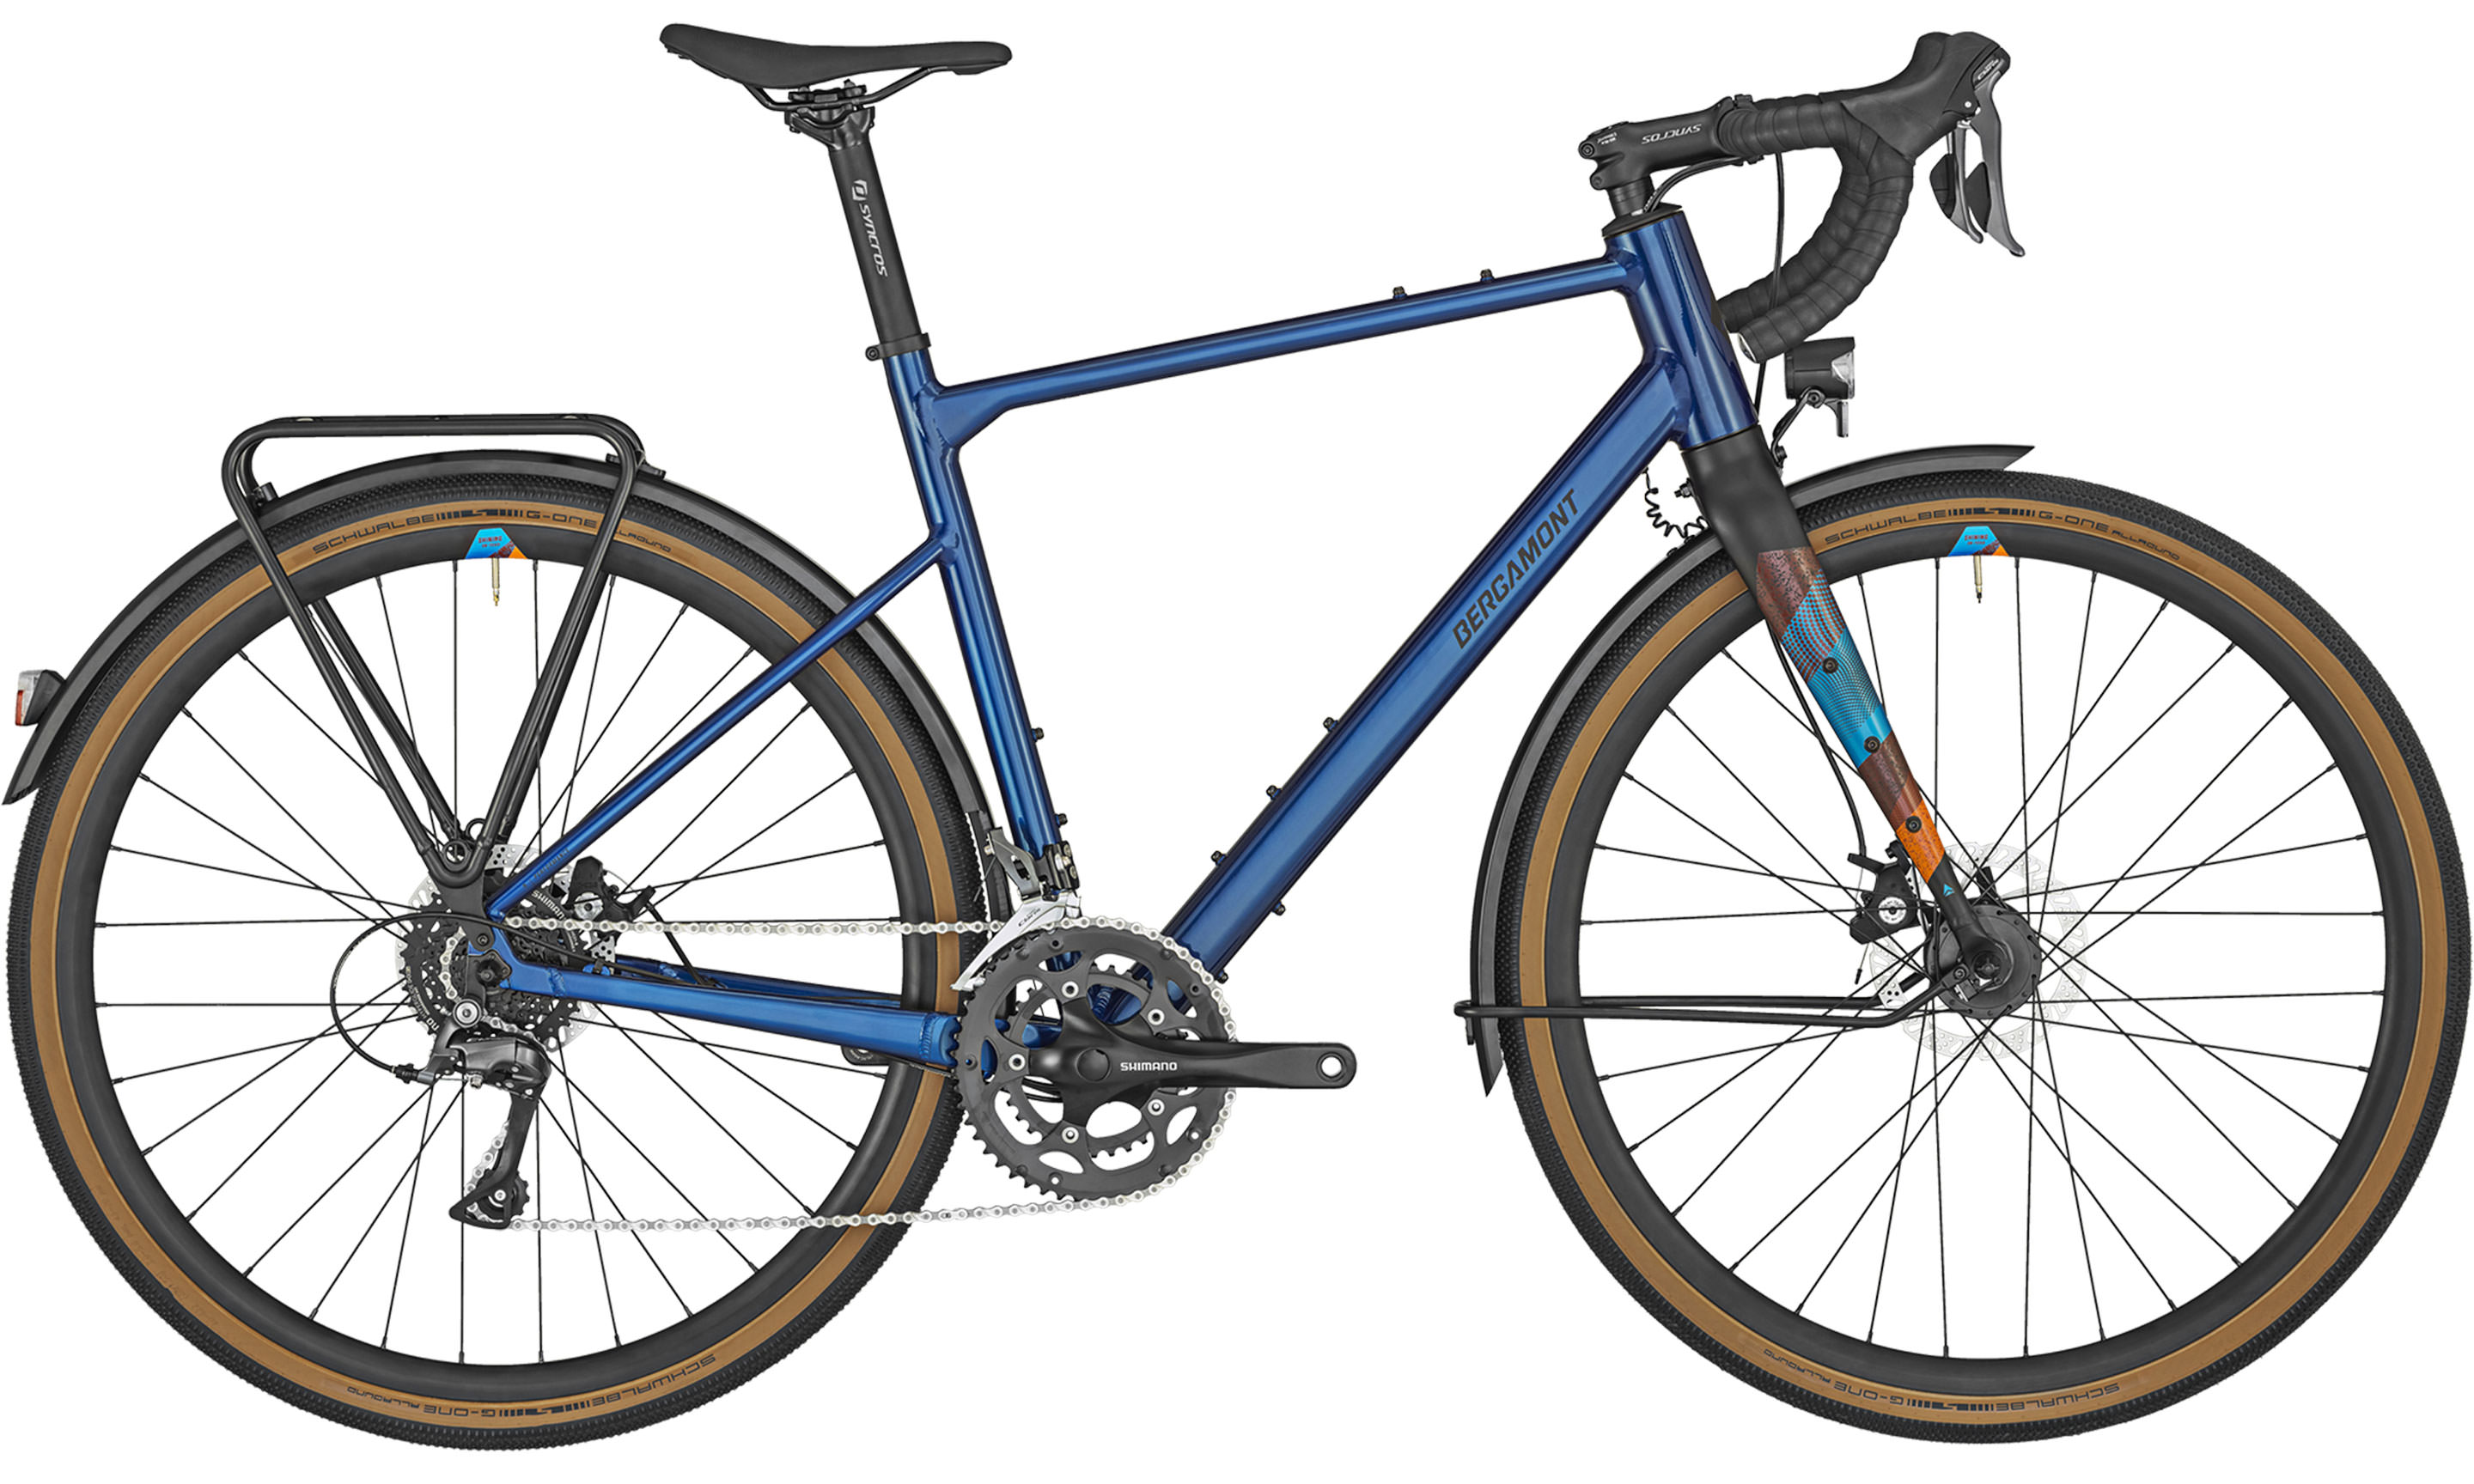 Photo du vélo Grandurance RD3 Blue Bleu métallique